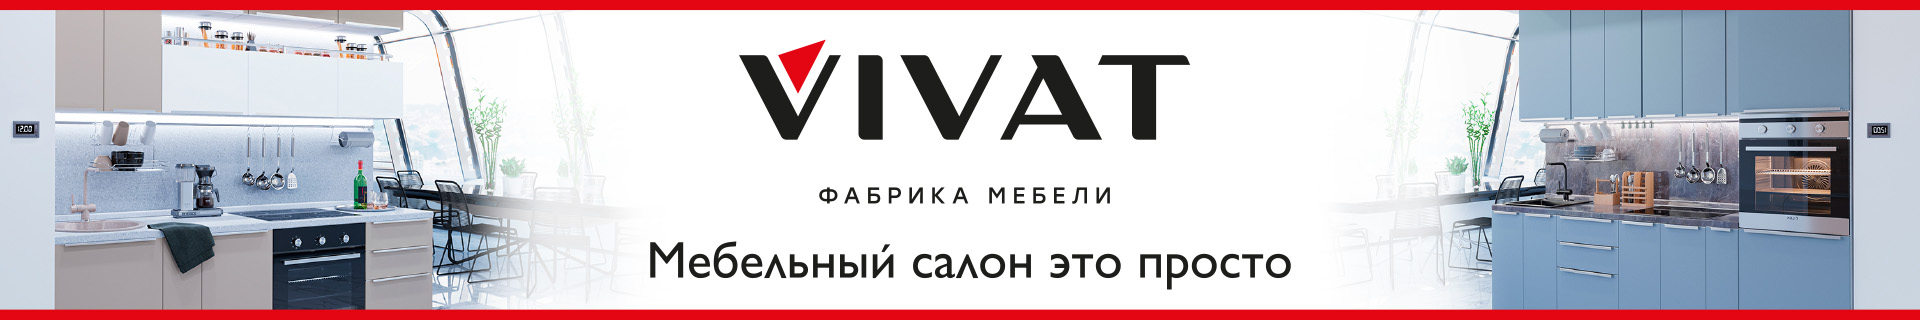 Франшиза салона кухонь фабрики мебели VIVAT